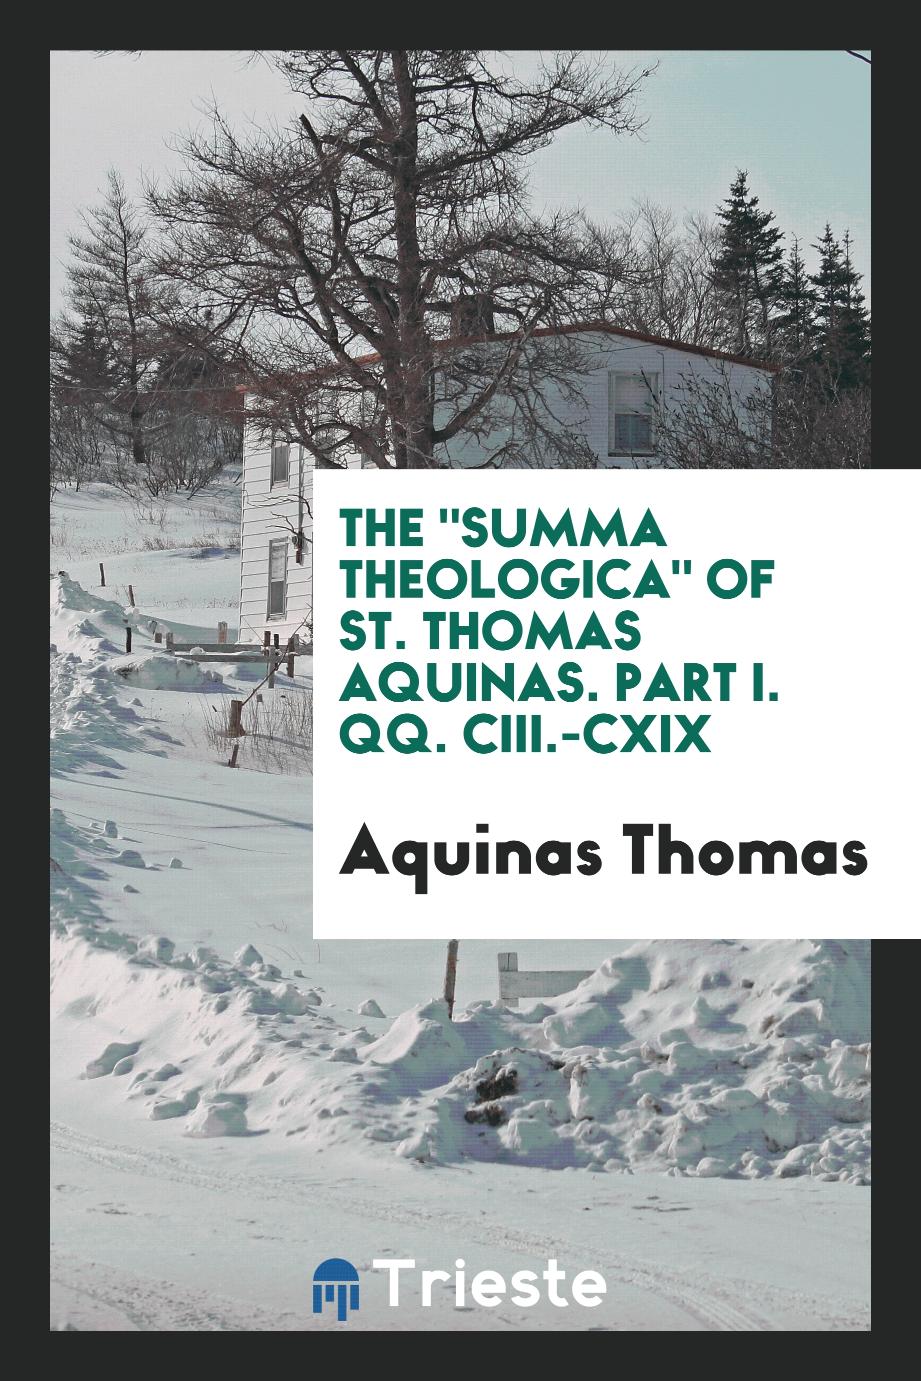 Aquinas Thomas - The "Summa theologica" of St. Thomas Aquinas. Part I. QQ. CIII.-CXIX